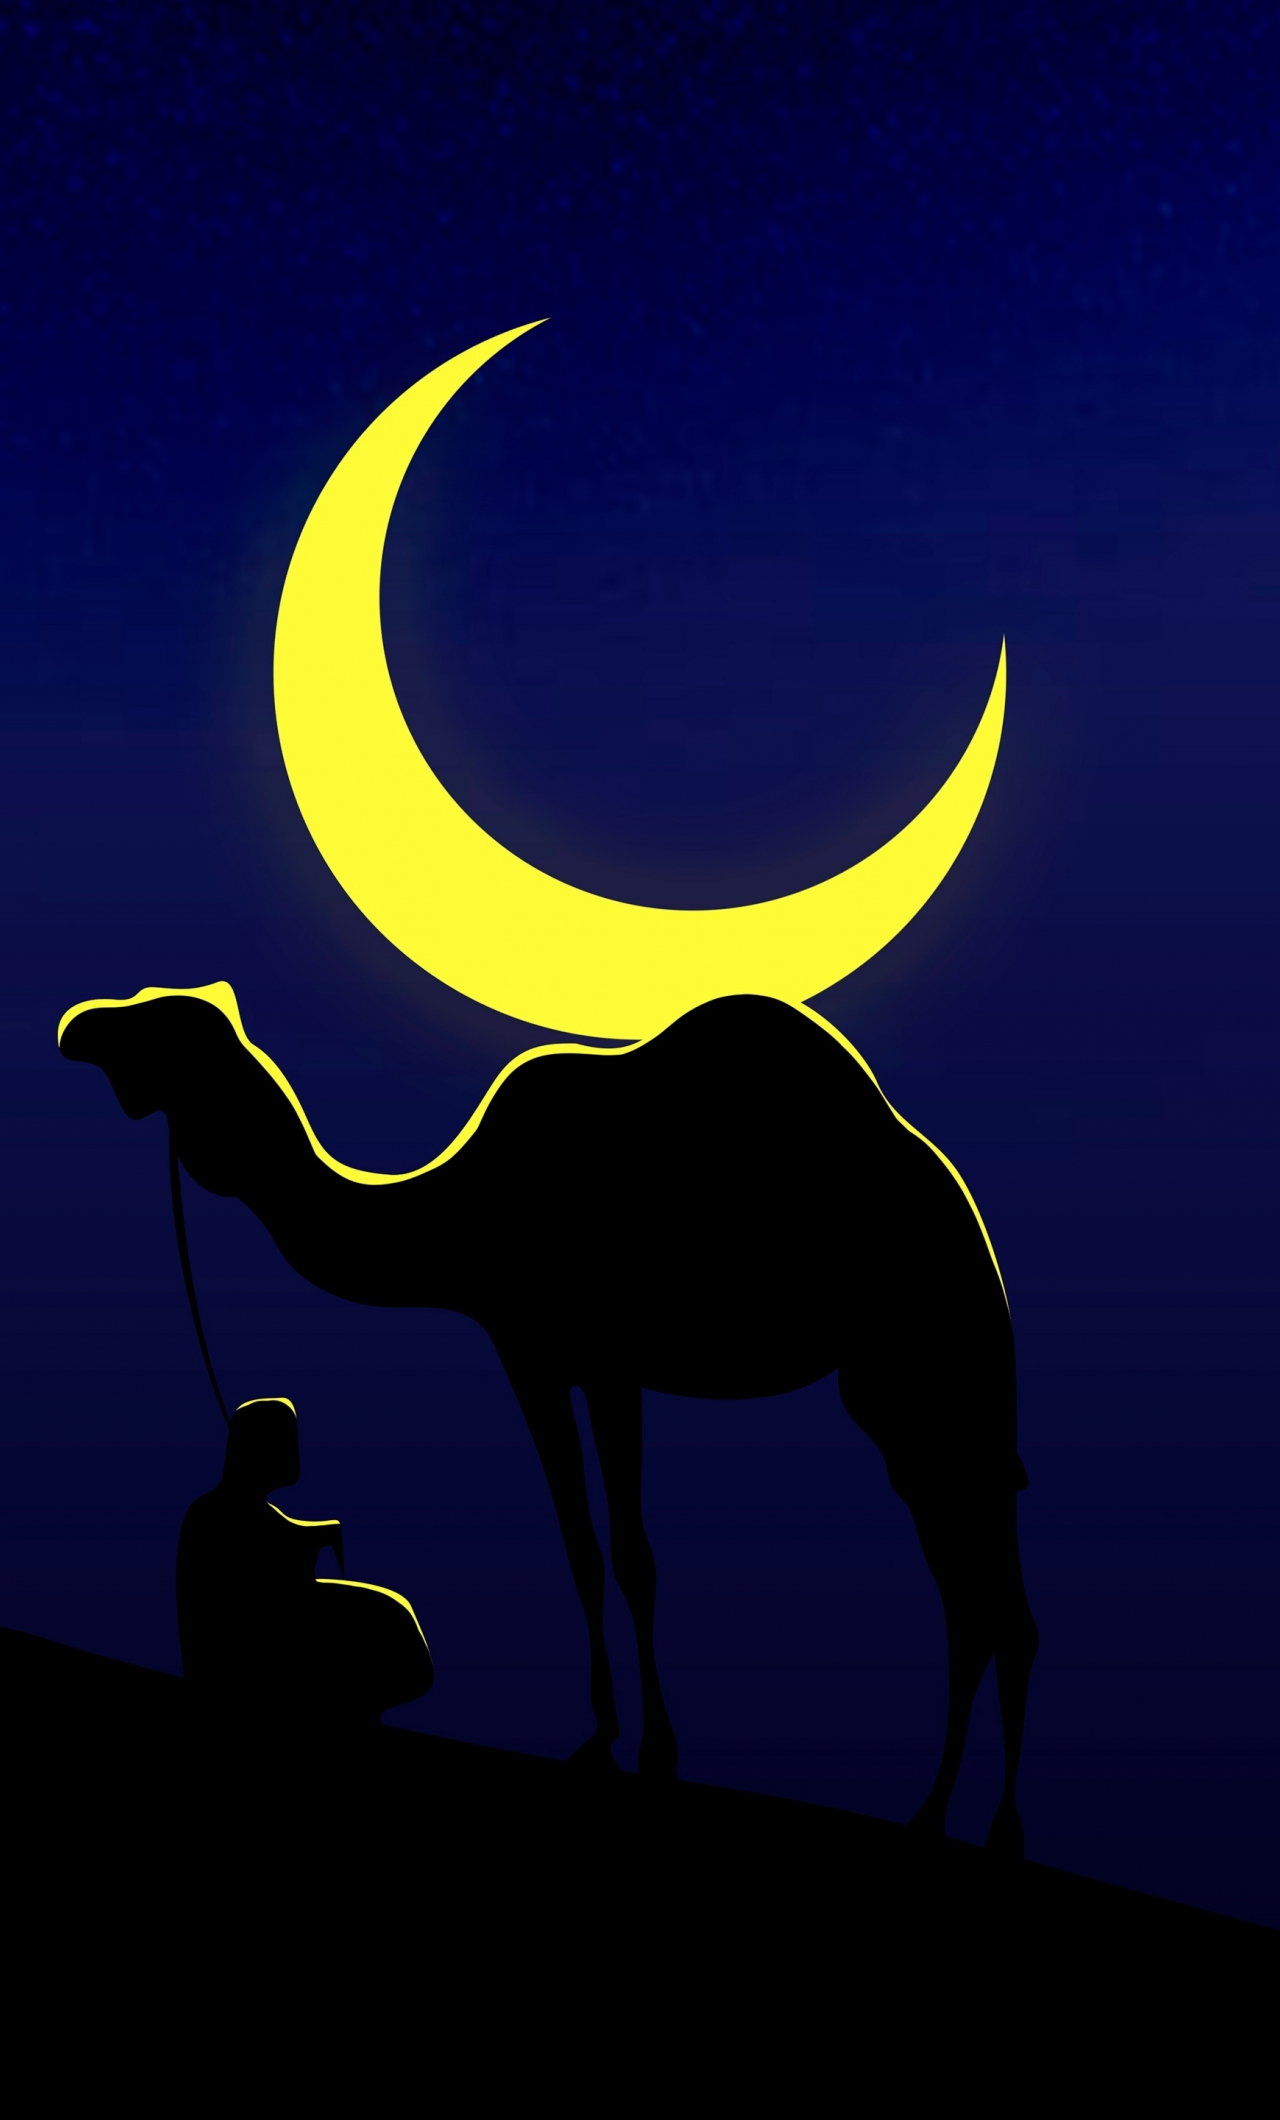 Camel and his master, moon, minimal, 1280x2120 wallpaper